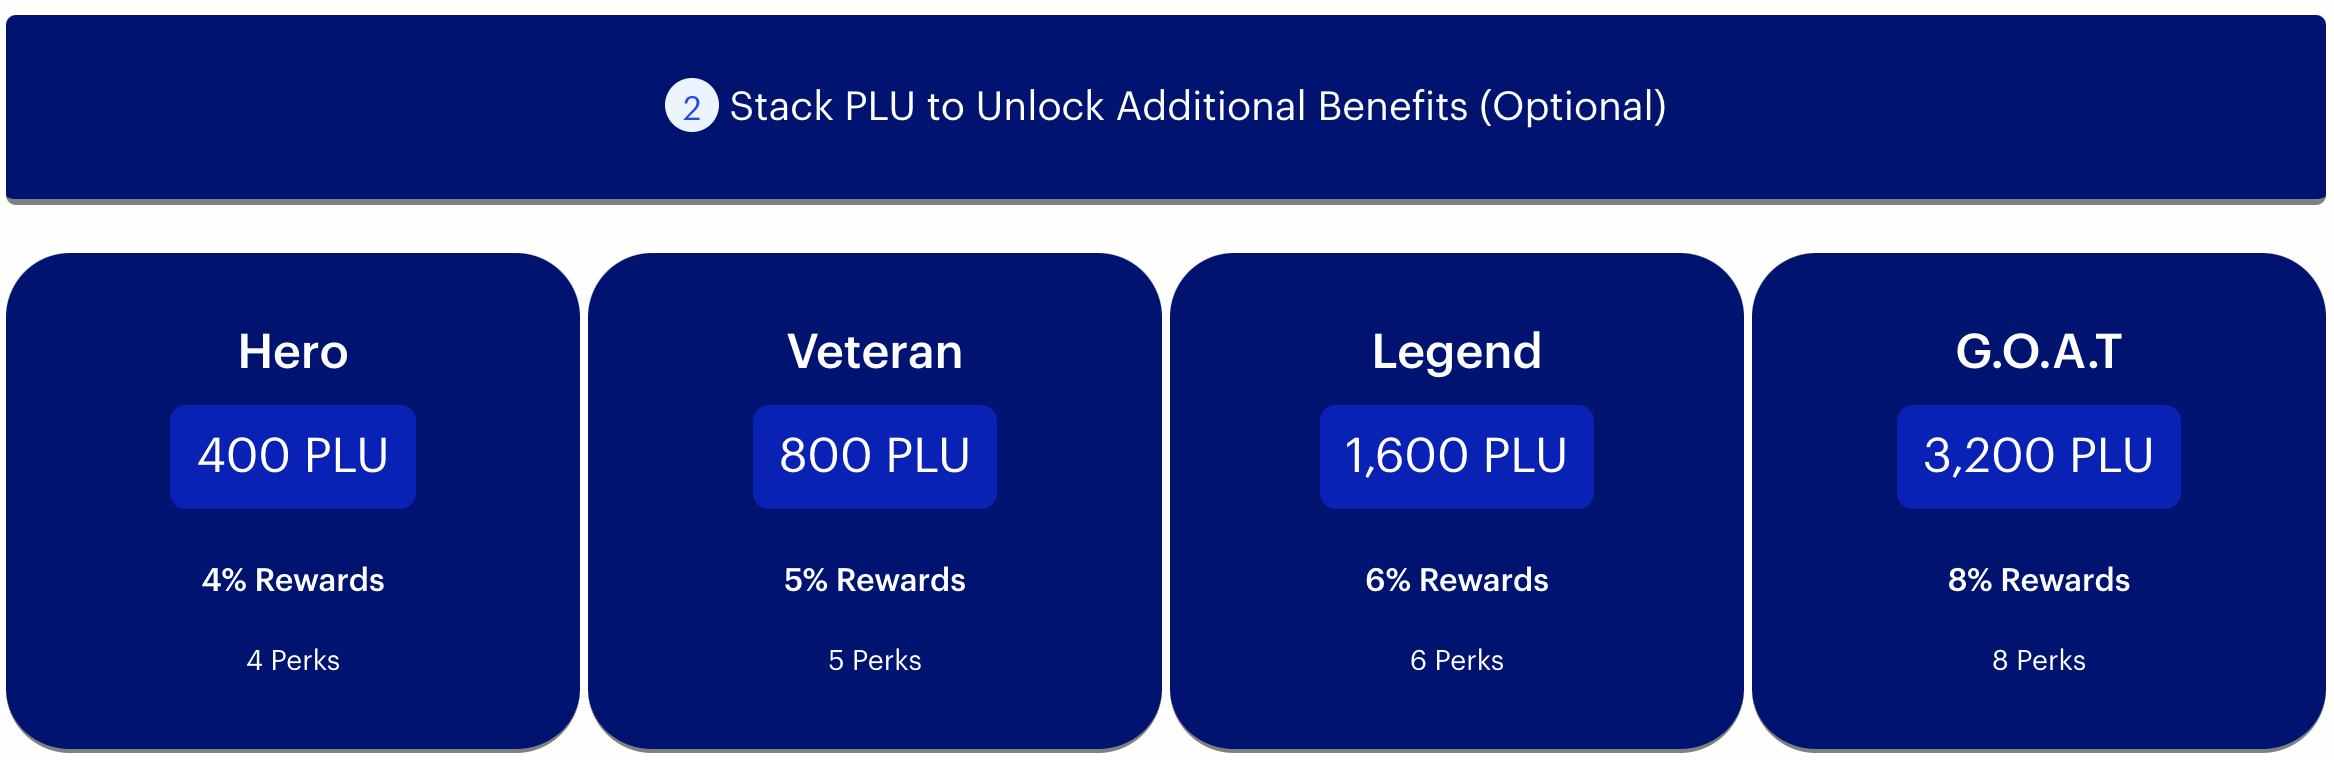 PLU Reward Levels